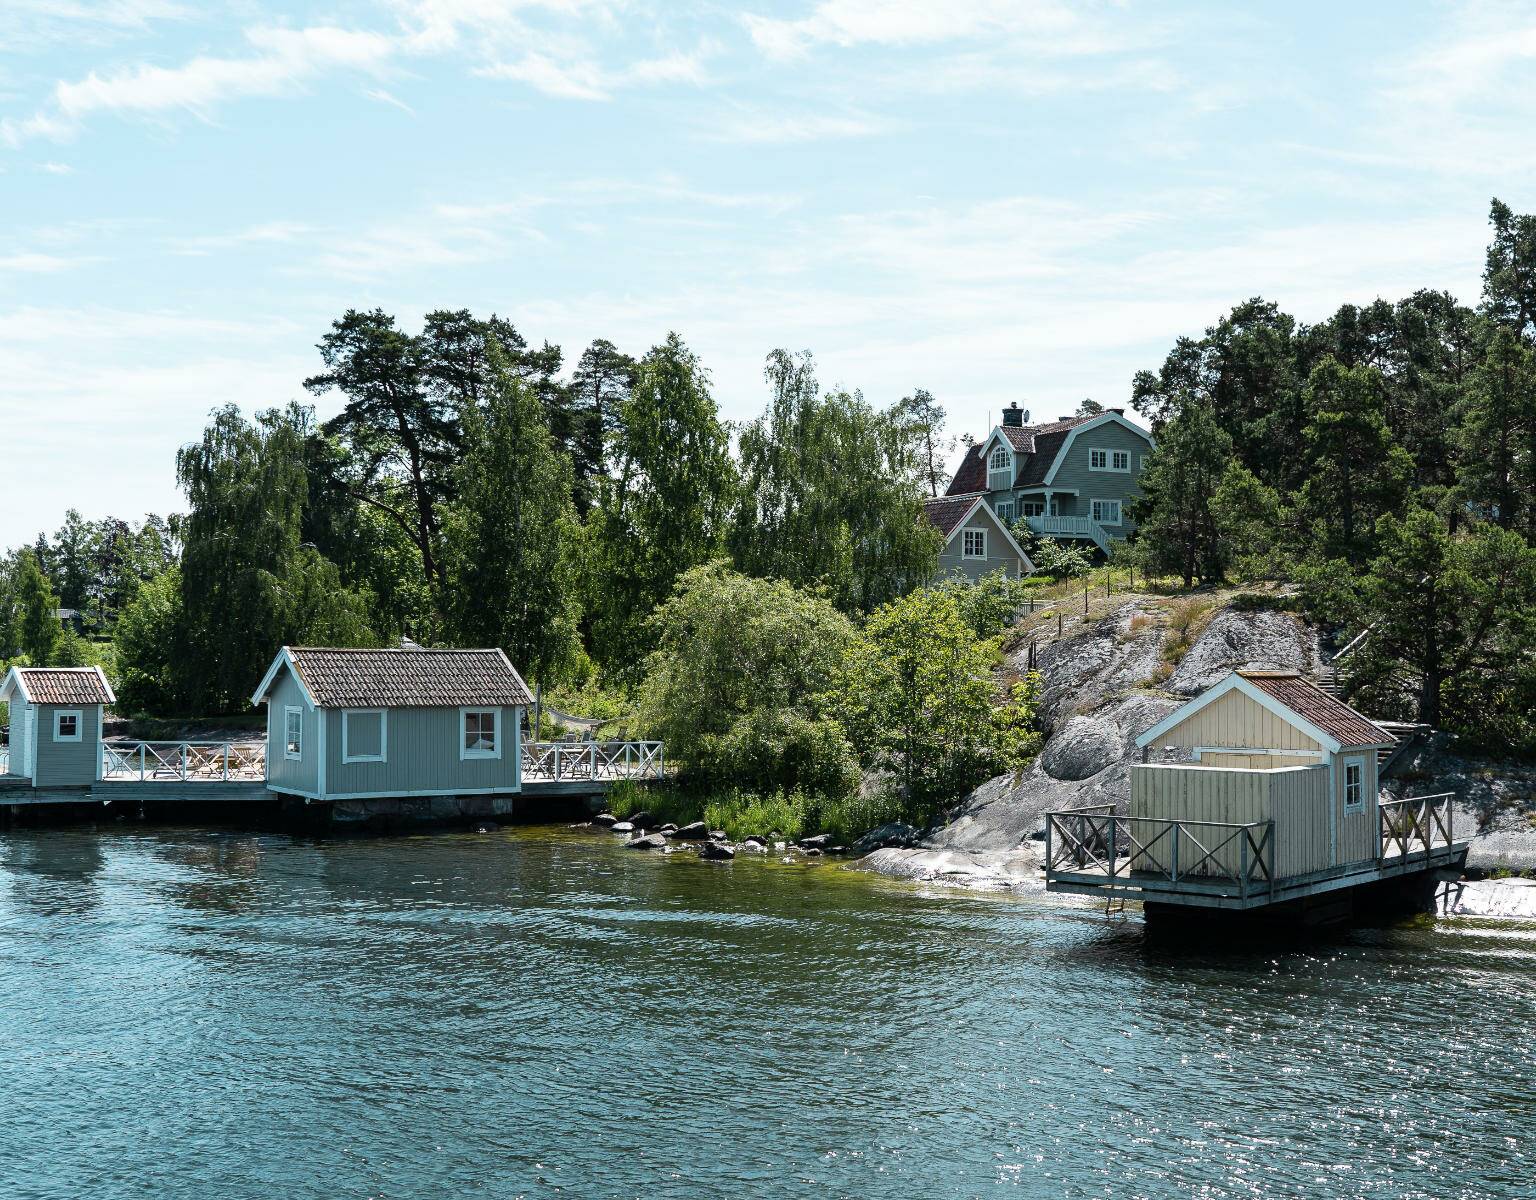 Unbedingt zu empfehlen ist ein Ausflug von Stockholm zu den kleinen, bunten Badehäusern aus Holz, die sich auf den Inseln des Schärengartens ans Ufer schmiegen. Hier kommt Sommer-in-Schweden-Feeling auf.